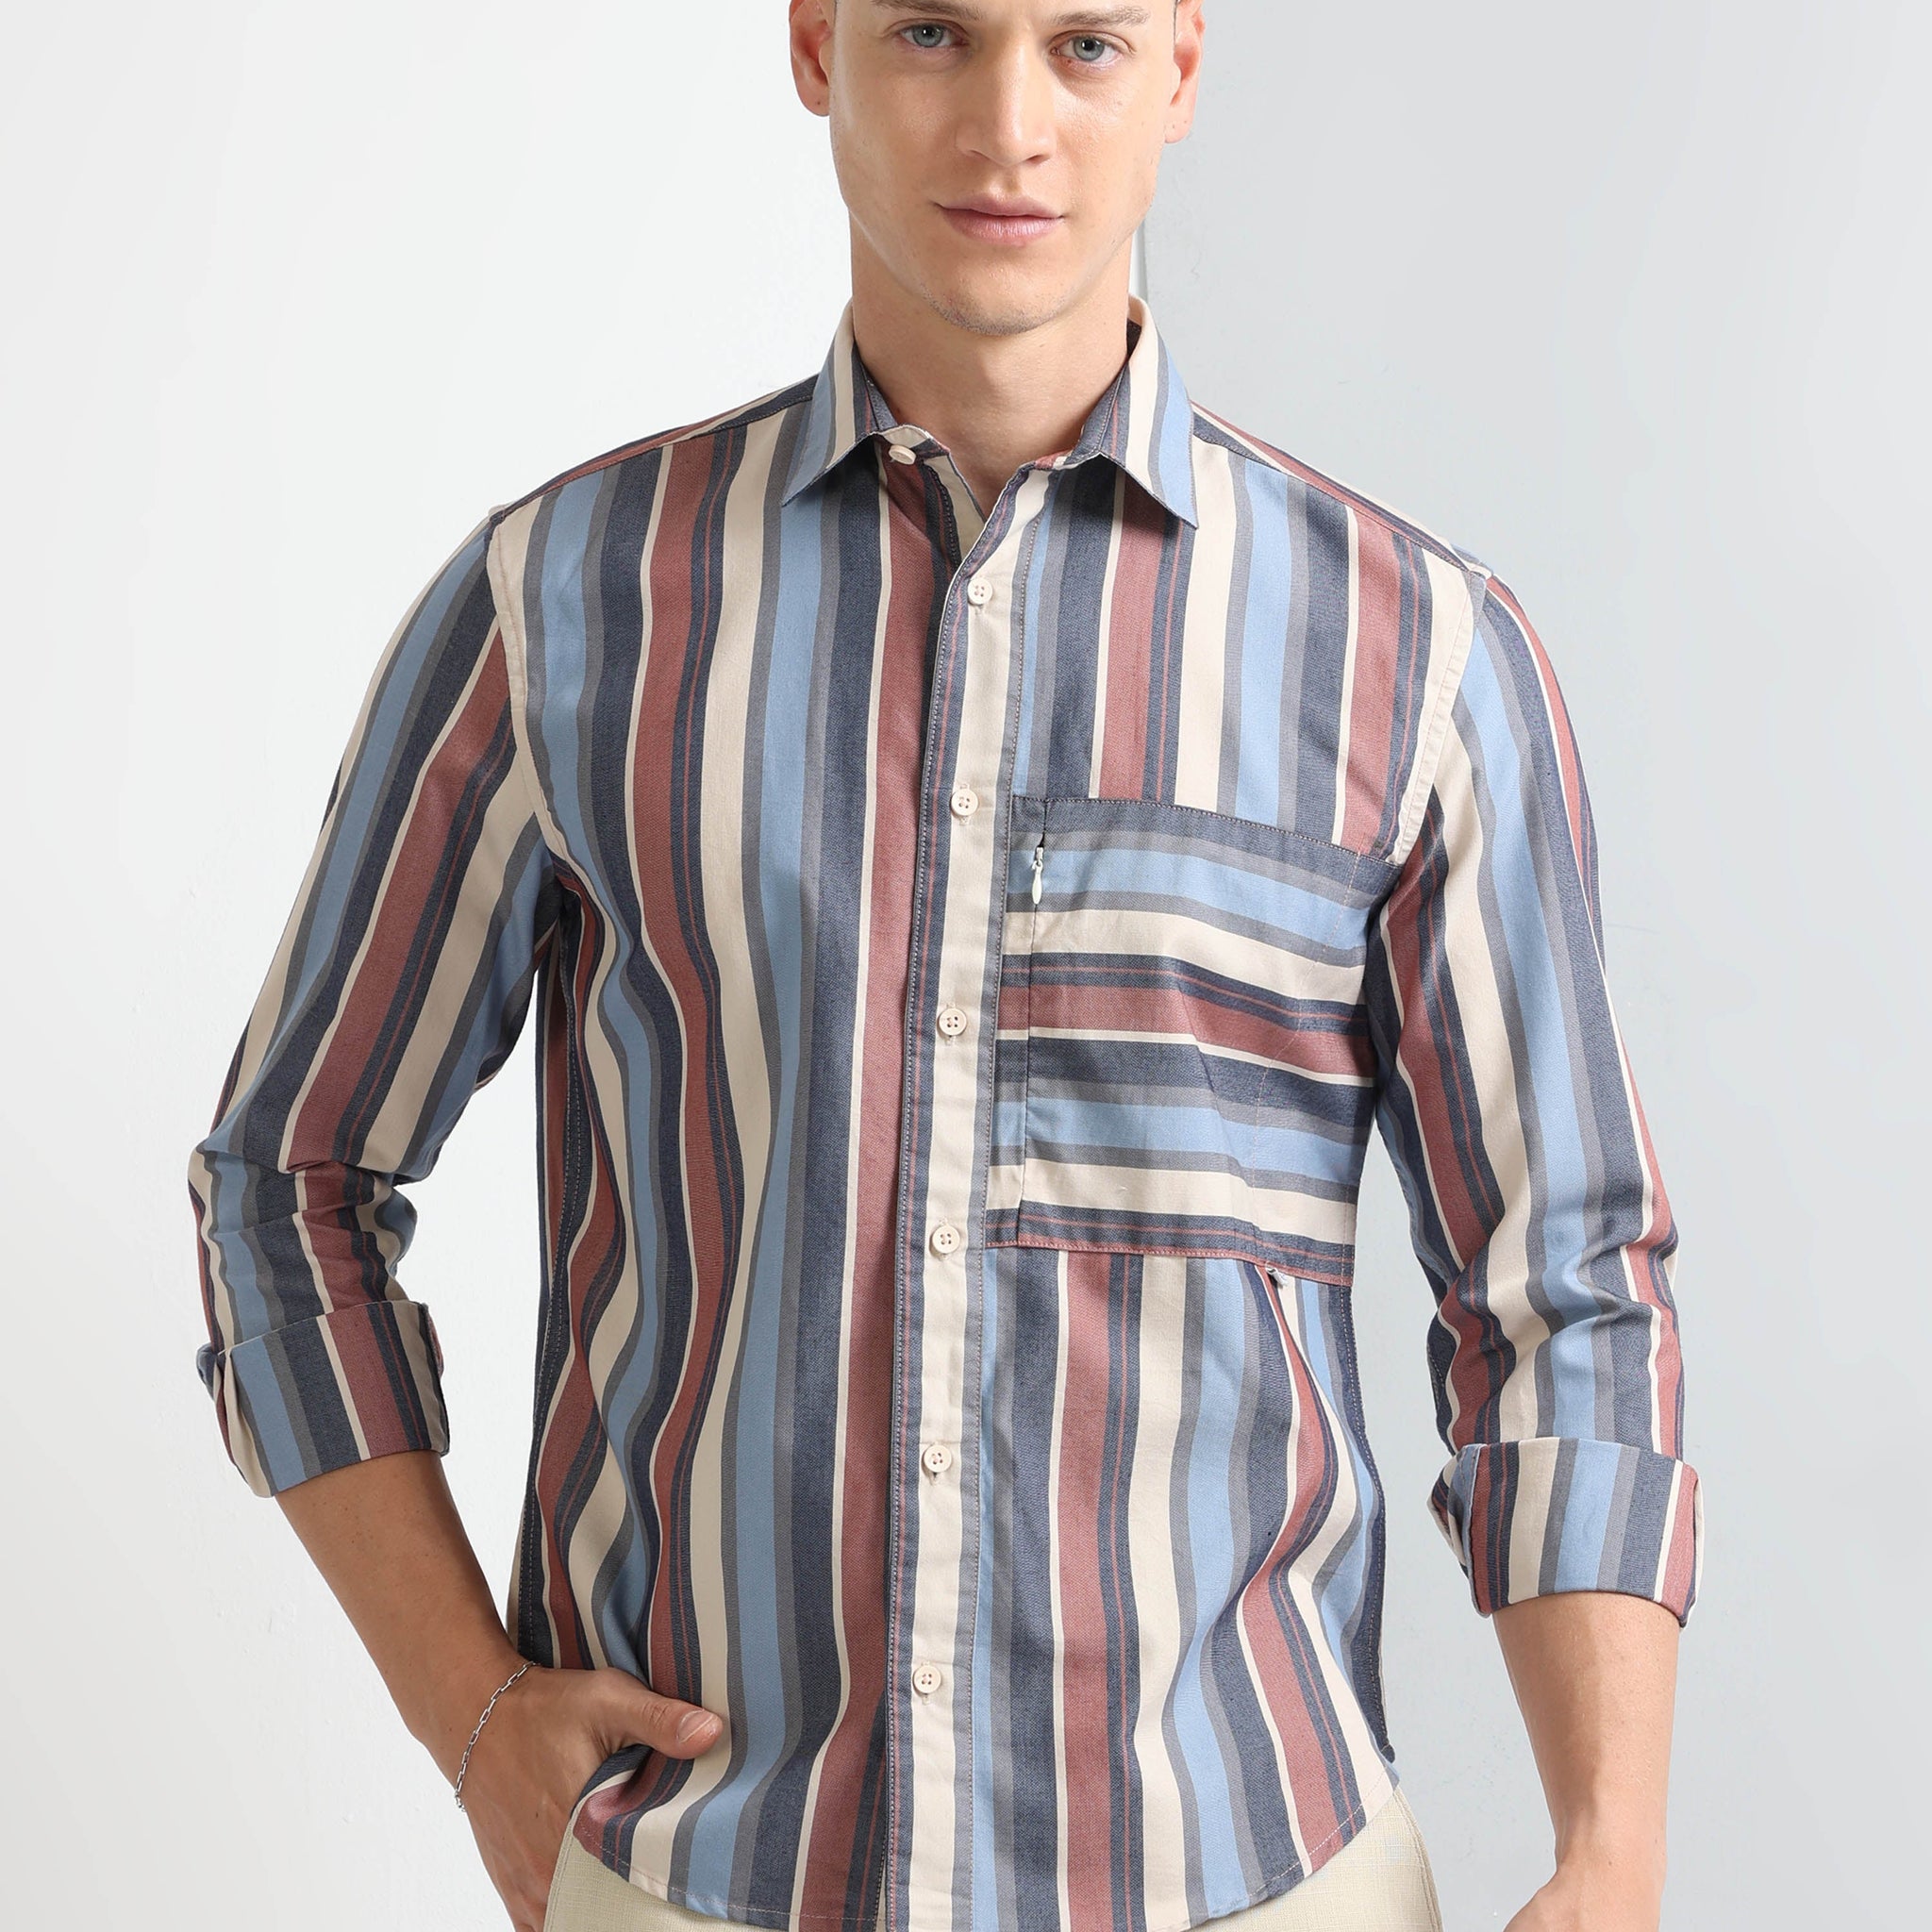 Buy Full Sleeve Stipe Stylish Pocket Shirt Online.